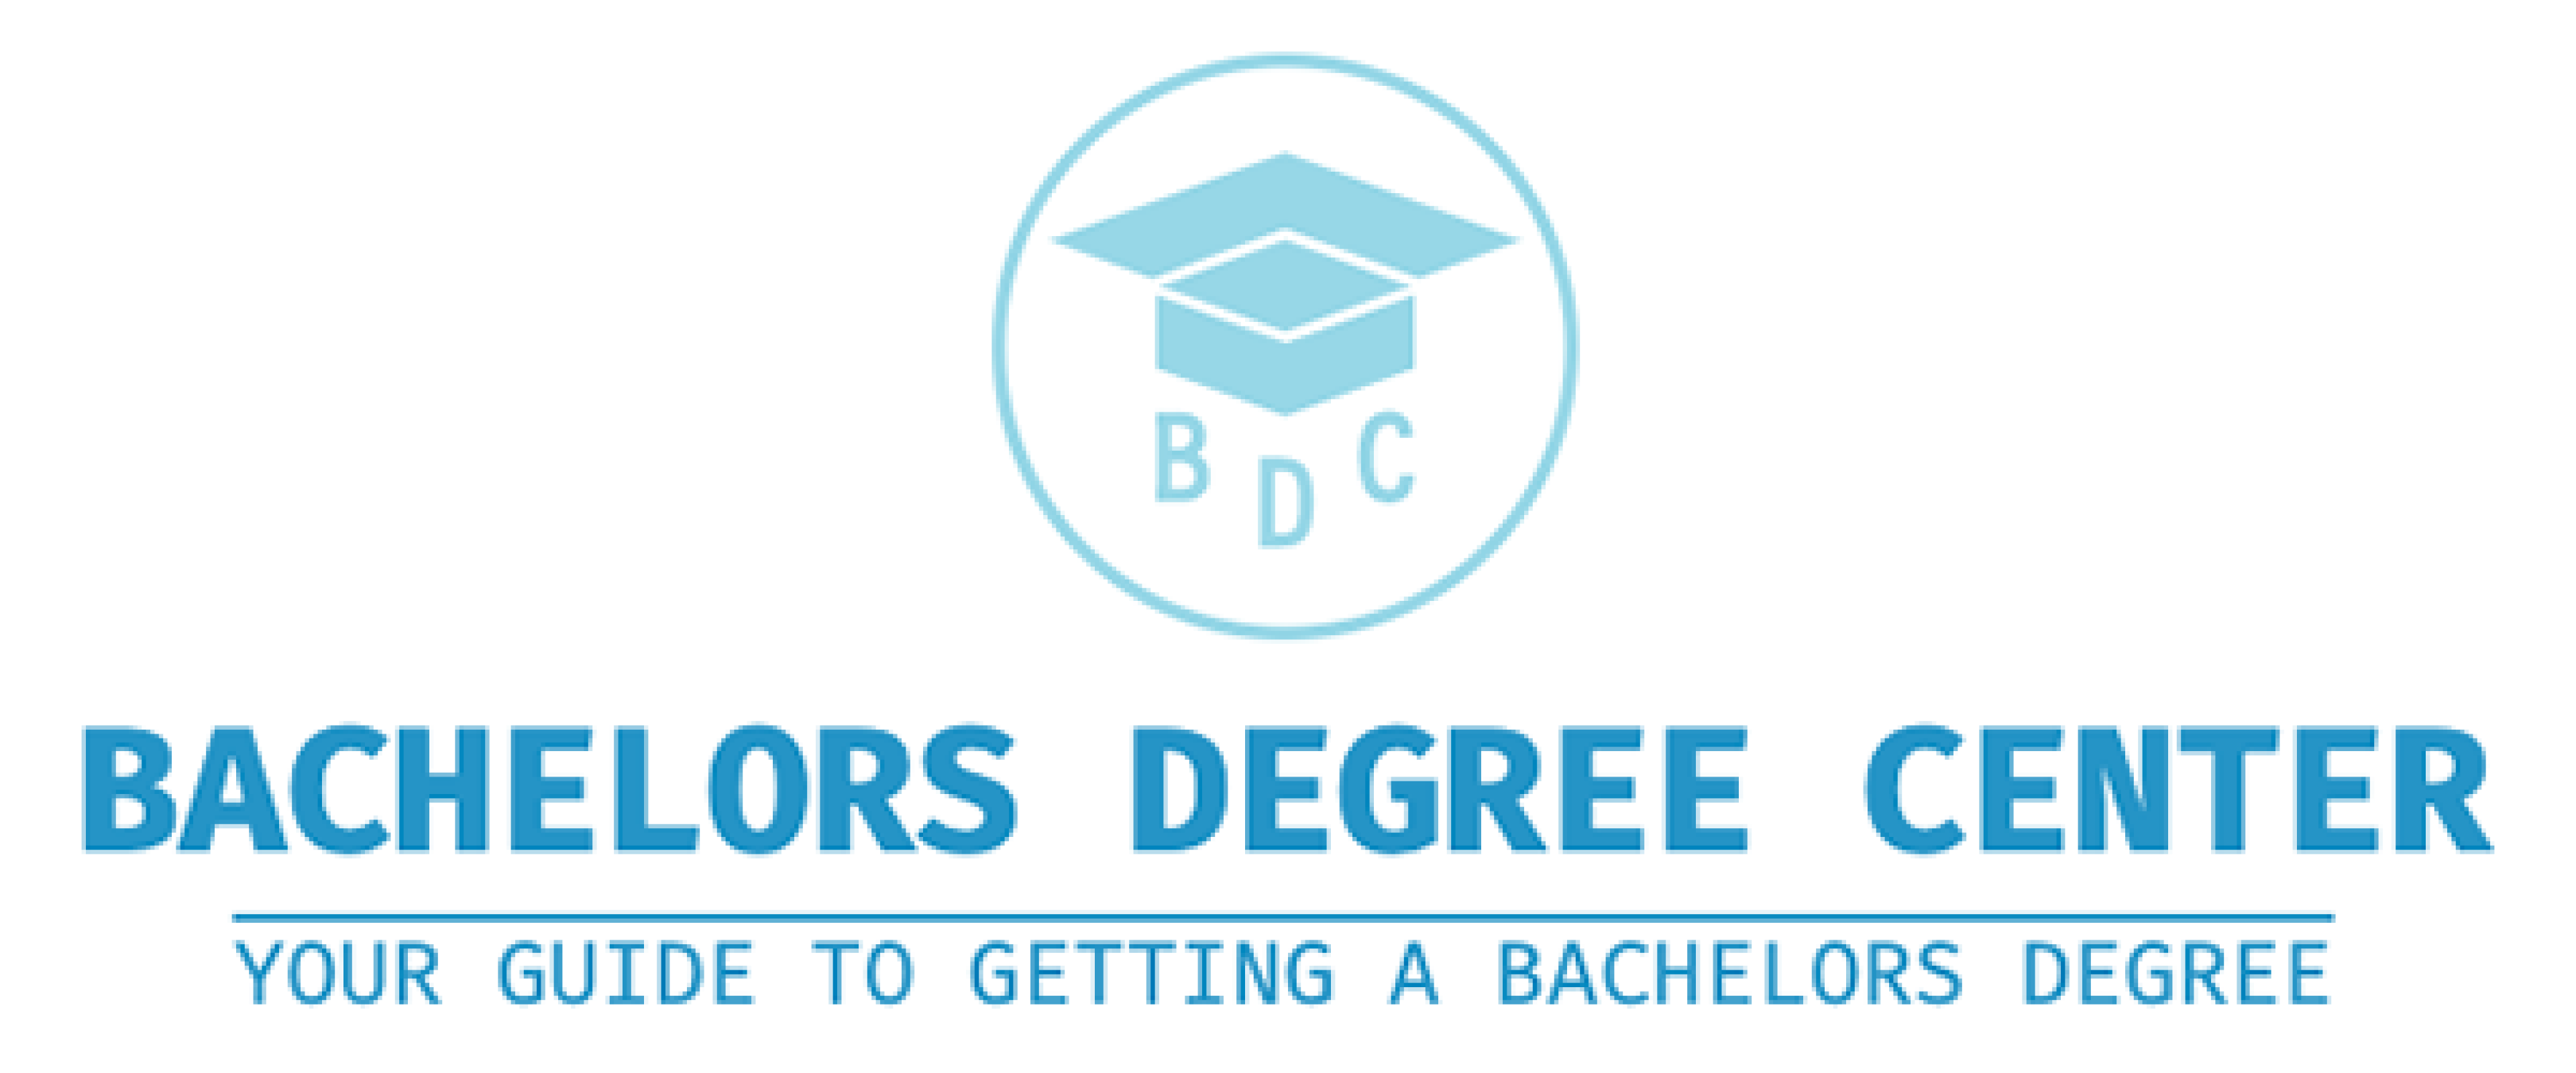 Bachelors Degree Center logo